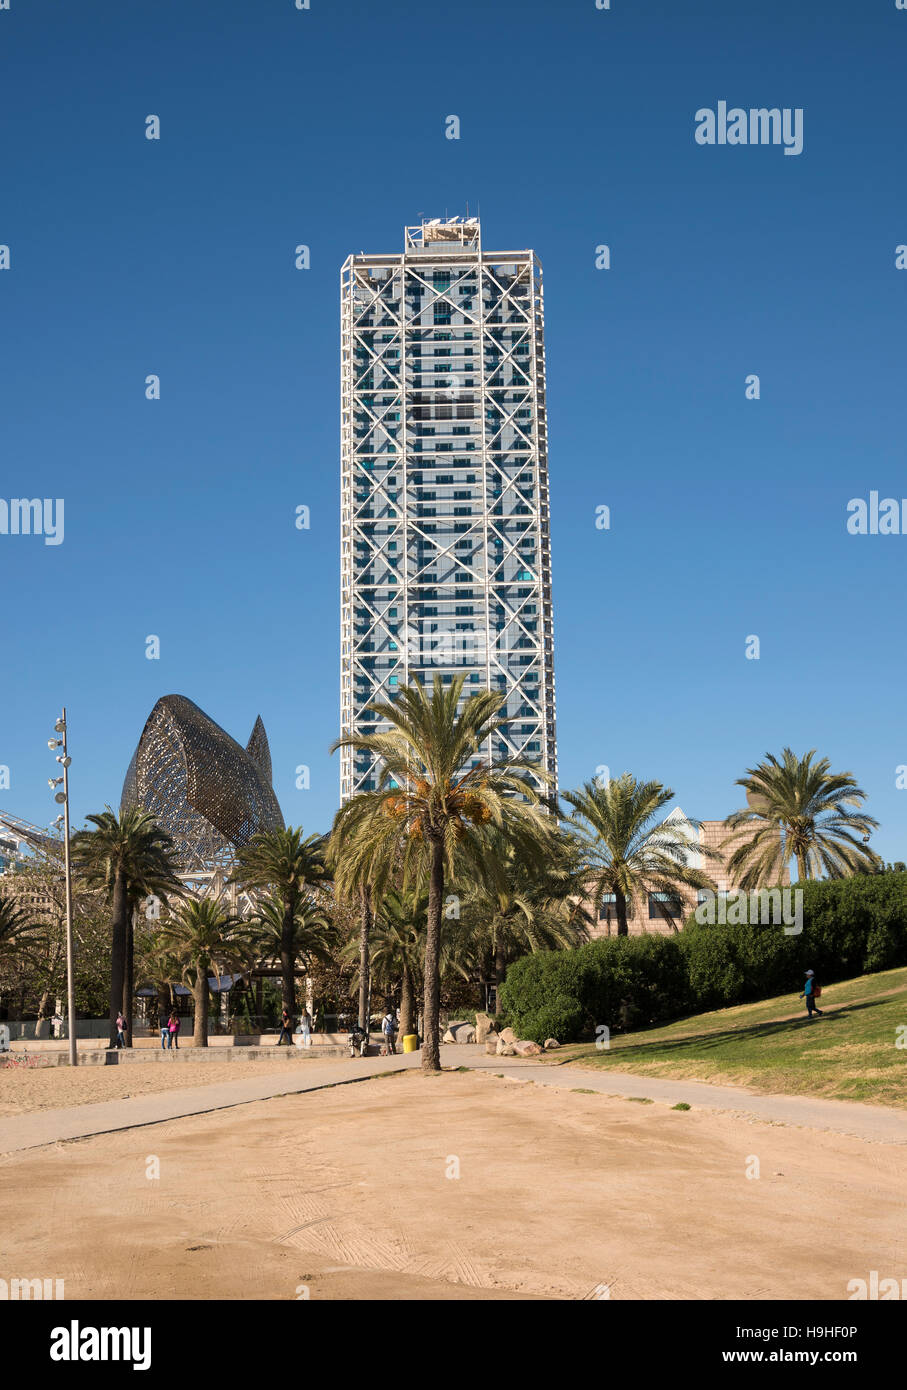 Skyscraper next to the Casino along the beach in Barcelona Stock Photo